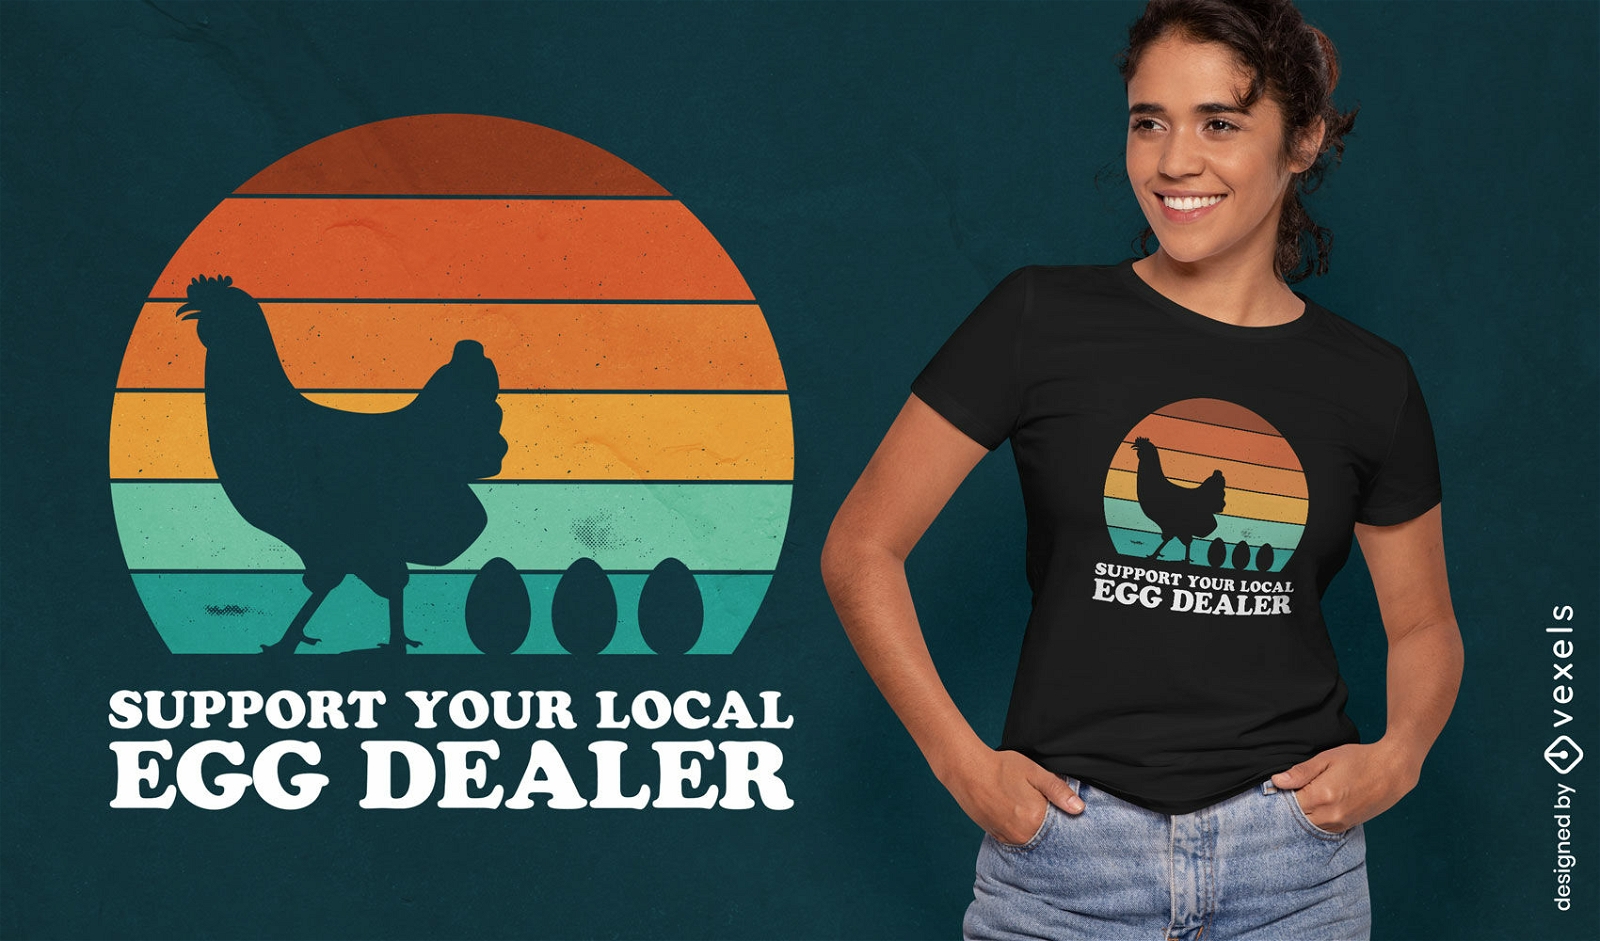 Unterstützen Sie das T-Shirt-Design Ihres örtlichen Eierhändlers